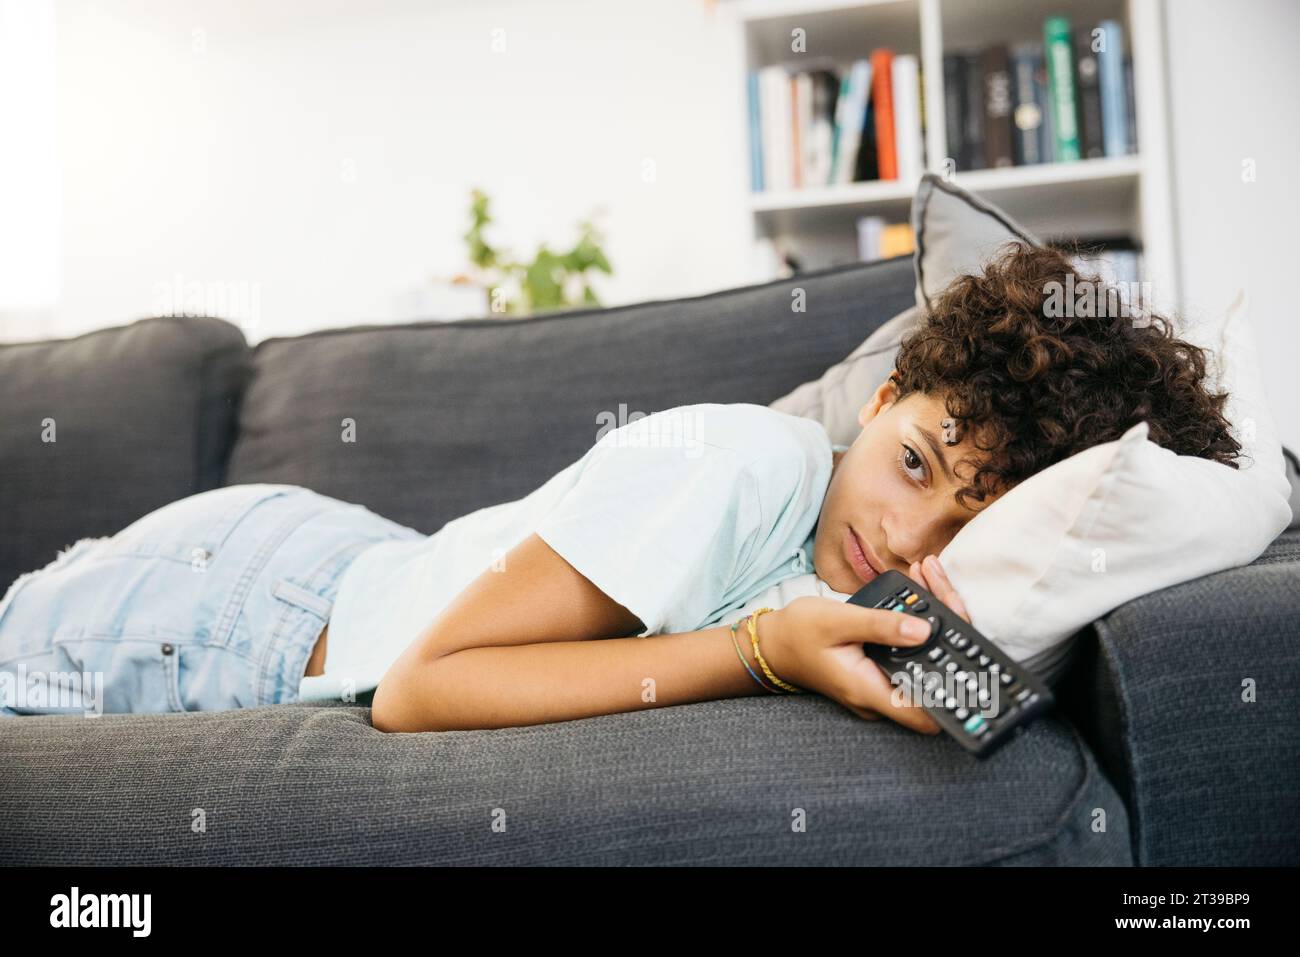 Fille ennuyée de dix ans allongée sur un canapé et regardant la télévision, avec une manette de télévision, dans un salon. Fille regardant un film à la maison. Banque D'Images